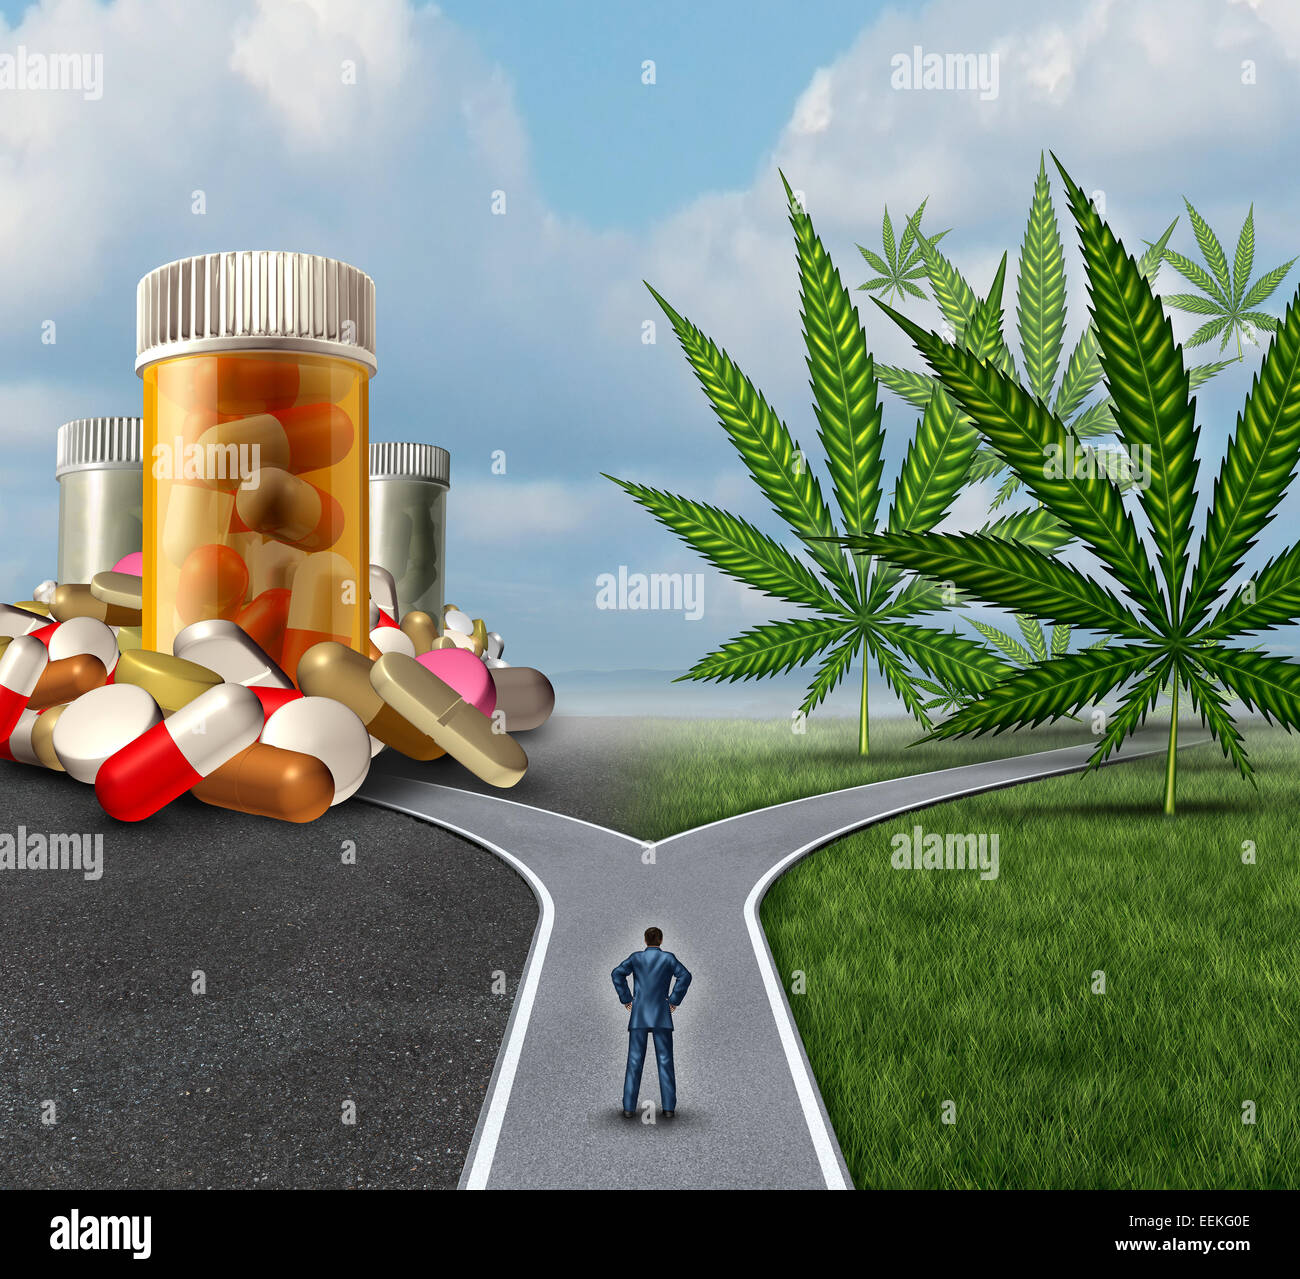 Medical Marijuana choix dilemme les soins de concept comme une personne debout en face de deux voies avec une seule offre la médecine traditionnelle et l'autre option avec le cannabis. Banque D'Images